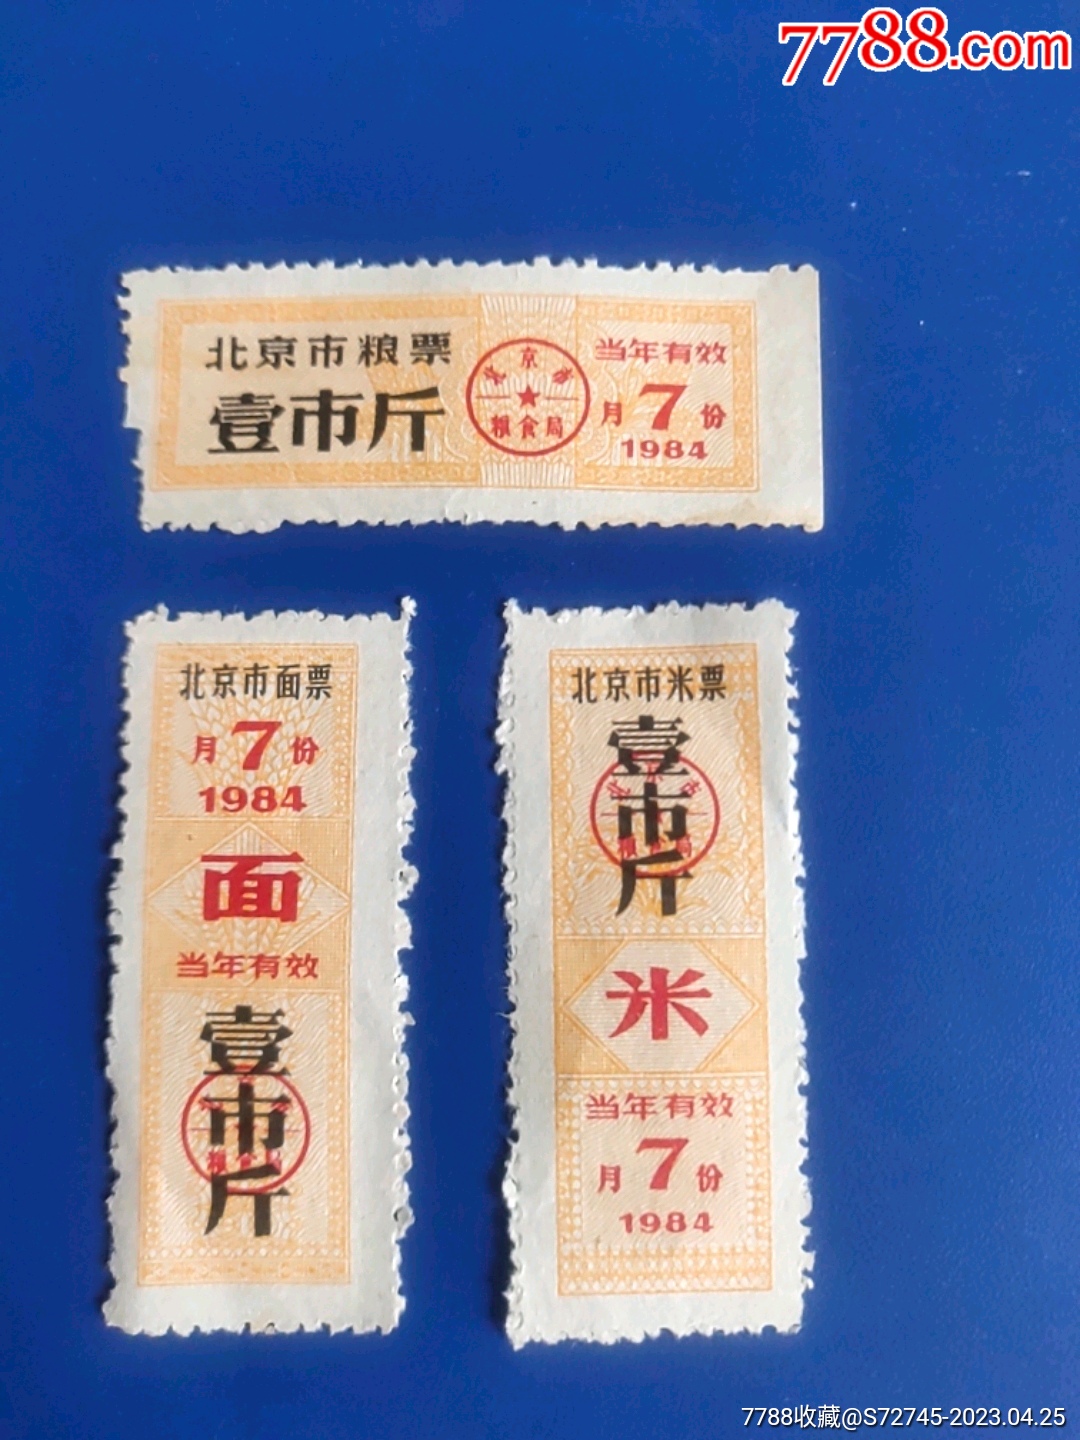 1986年北京市面票、1986年北京市粮票和1993年北京市米票共160张-价格:160元-au23348412-粮票 -加价-7788收藏__收藏热线